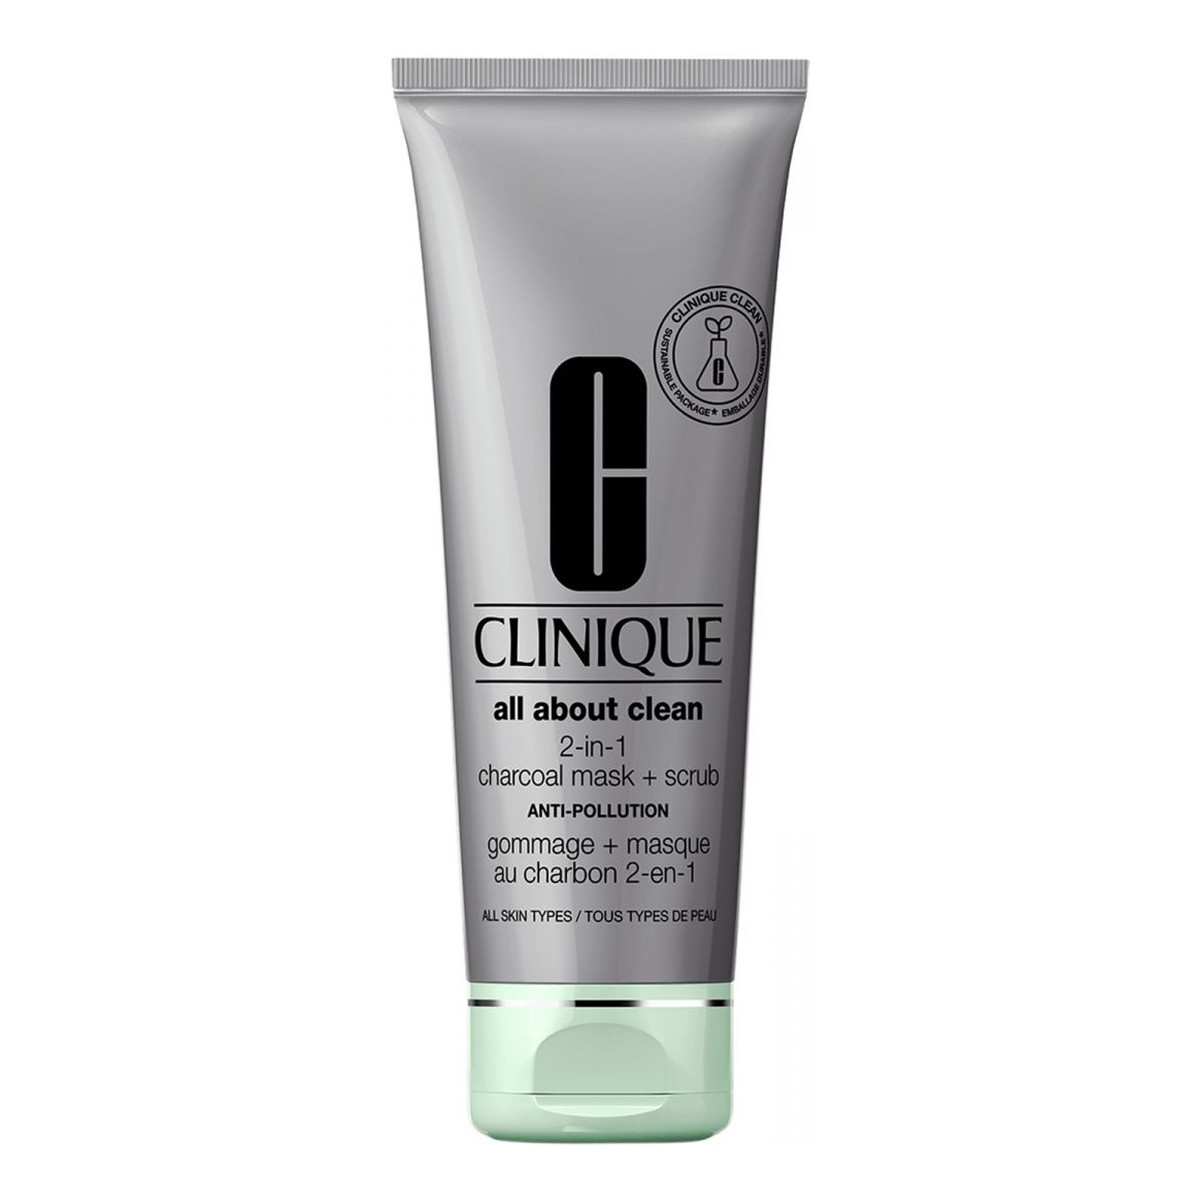 Clinique All about clean 2-in-1 charcoal mask + scrub oczyszczająca maseczka do twarzy